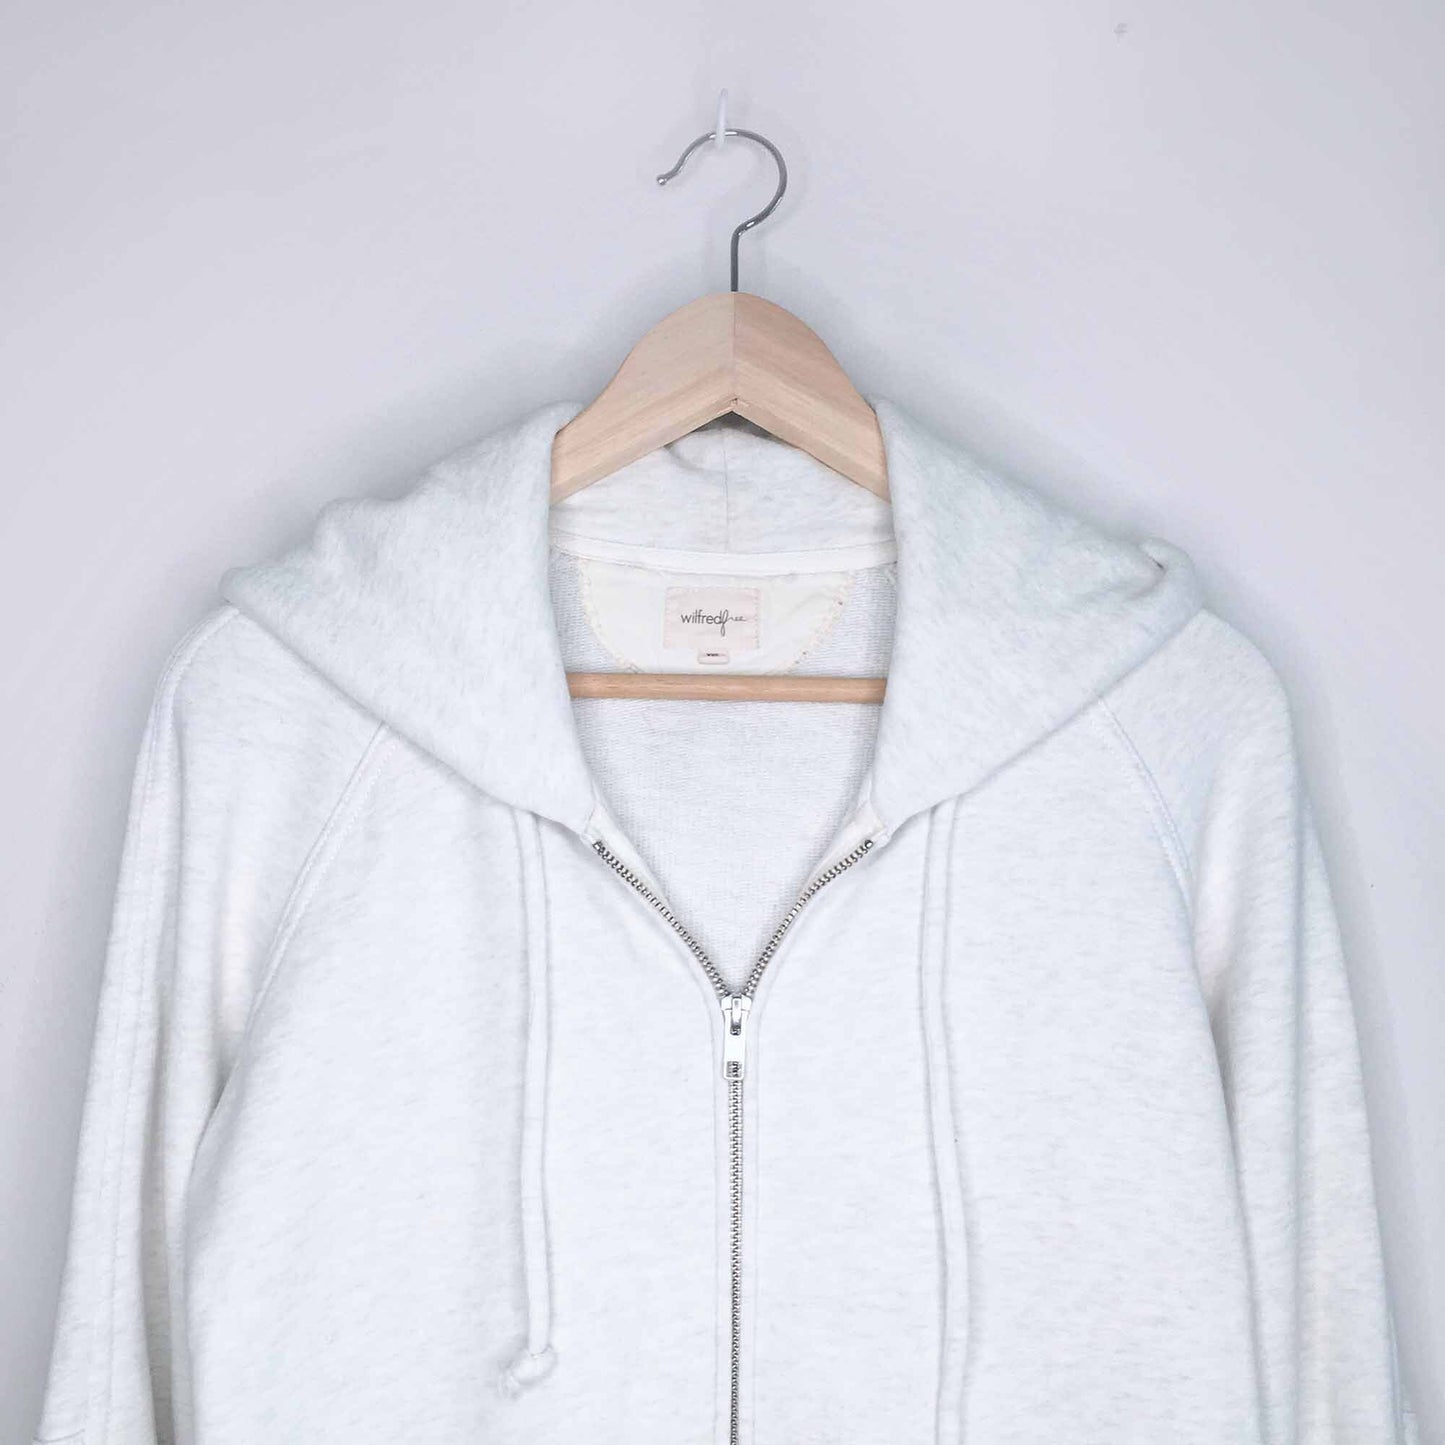 Wilfred Free long hooded sweatshirt zip-up - size xxs